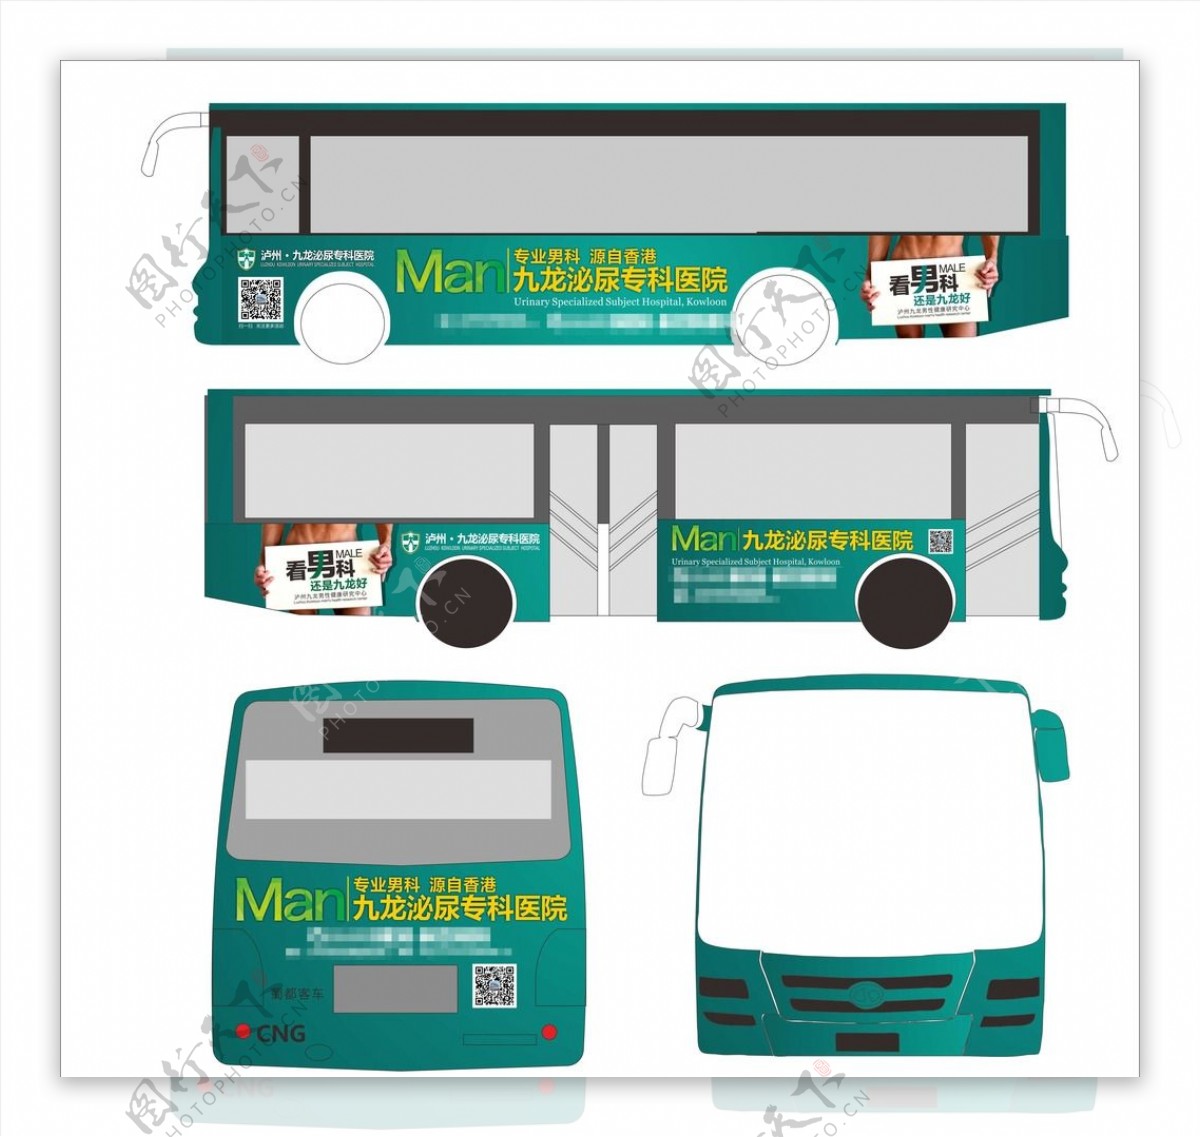 公交车身广告图片